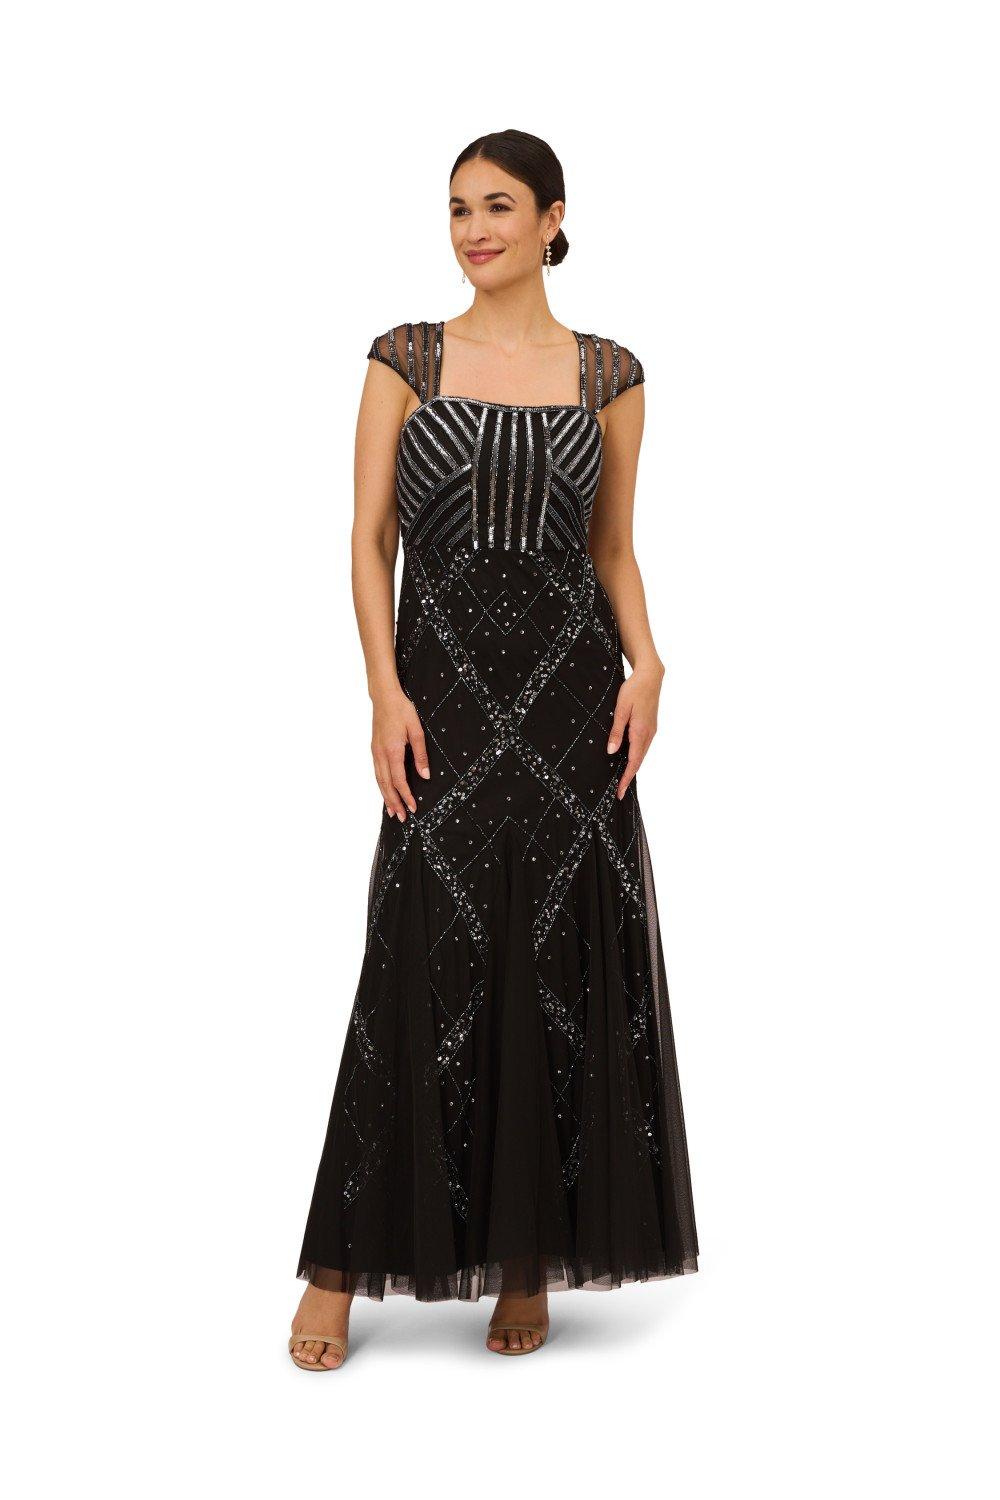 Платье с короткими рукавами и бисером Papell Studio, черный женское вечернее платье золотистое платье с длинным рукавом и круглым вырезом расшитое бисером 2021